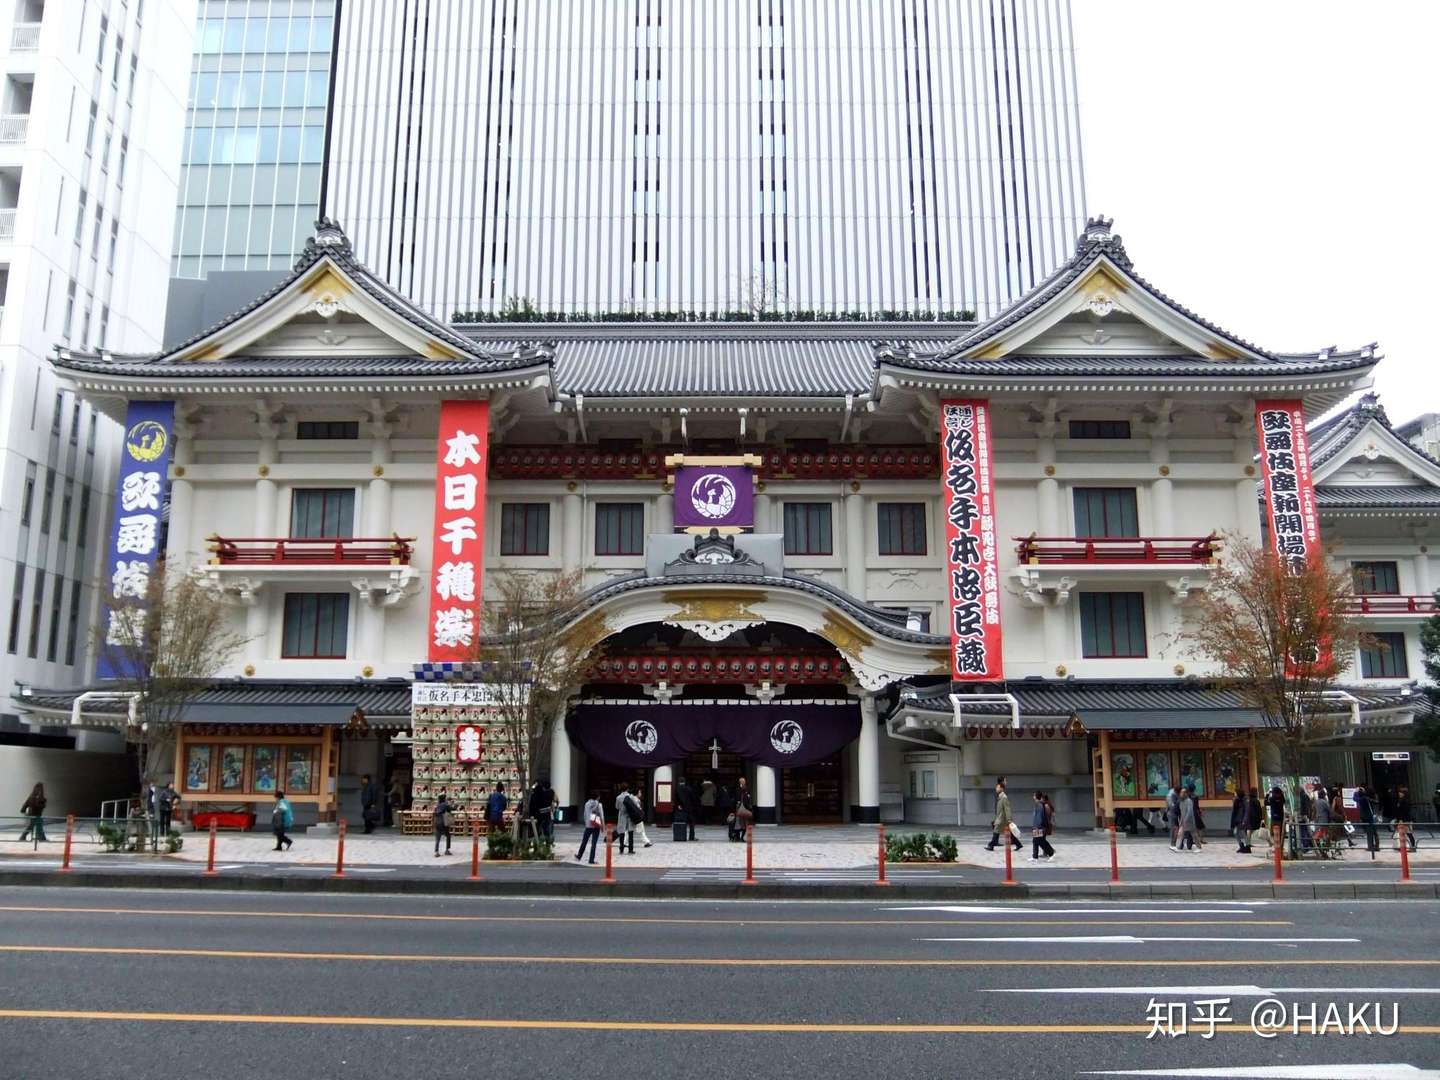 日本文化带你走进歌舞伎的世界 歌舞伎看点及观赏攻略篇 知乎